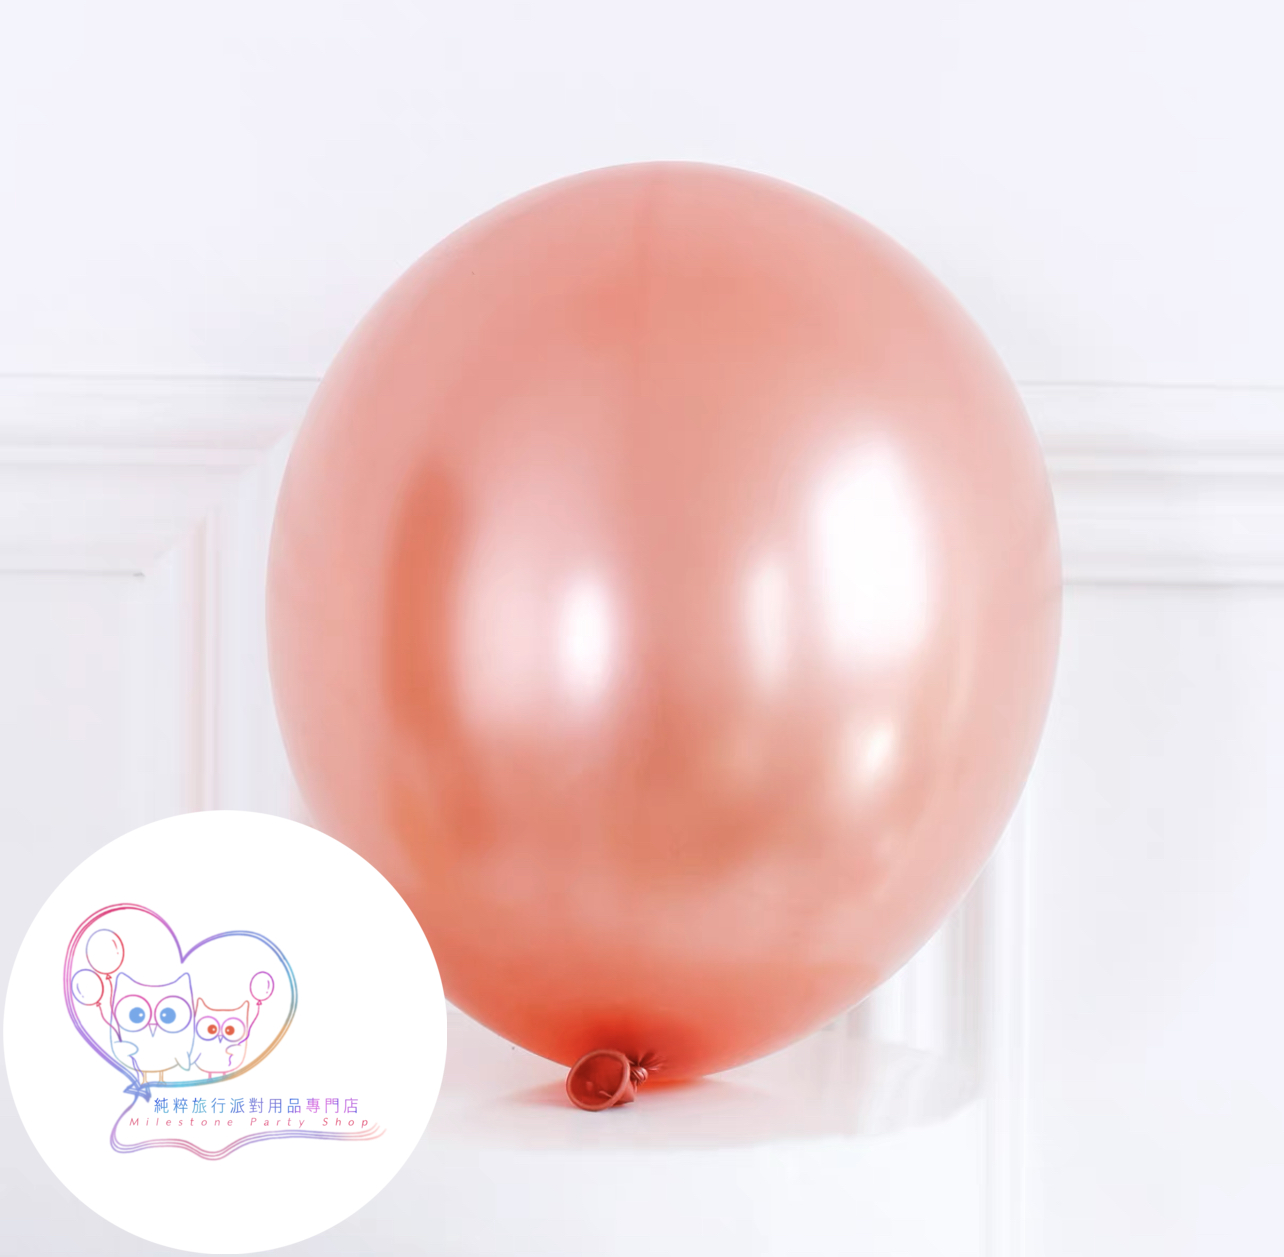 18吋氣球 (玫瑰金色) (1pc) 18LB6